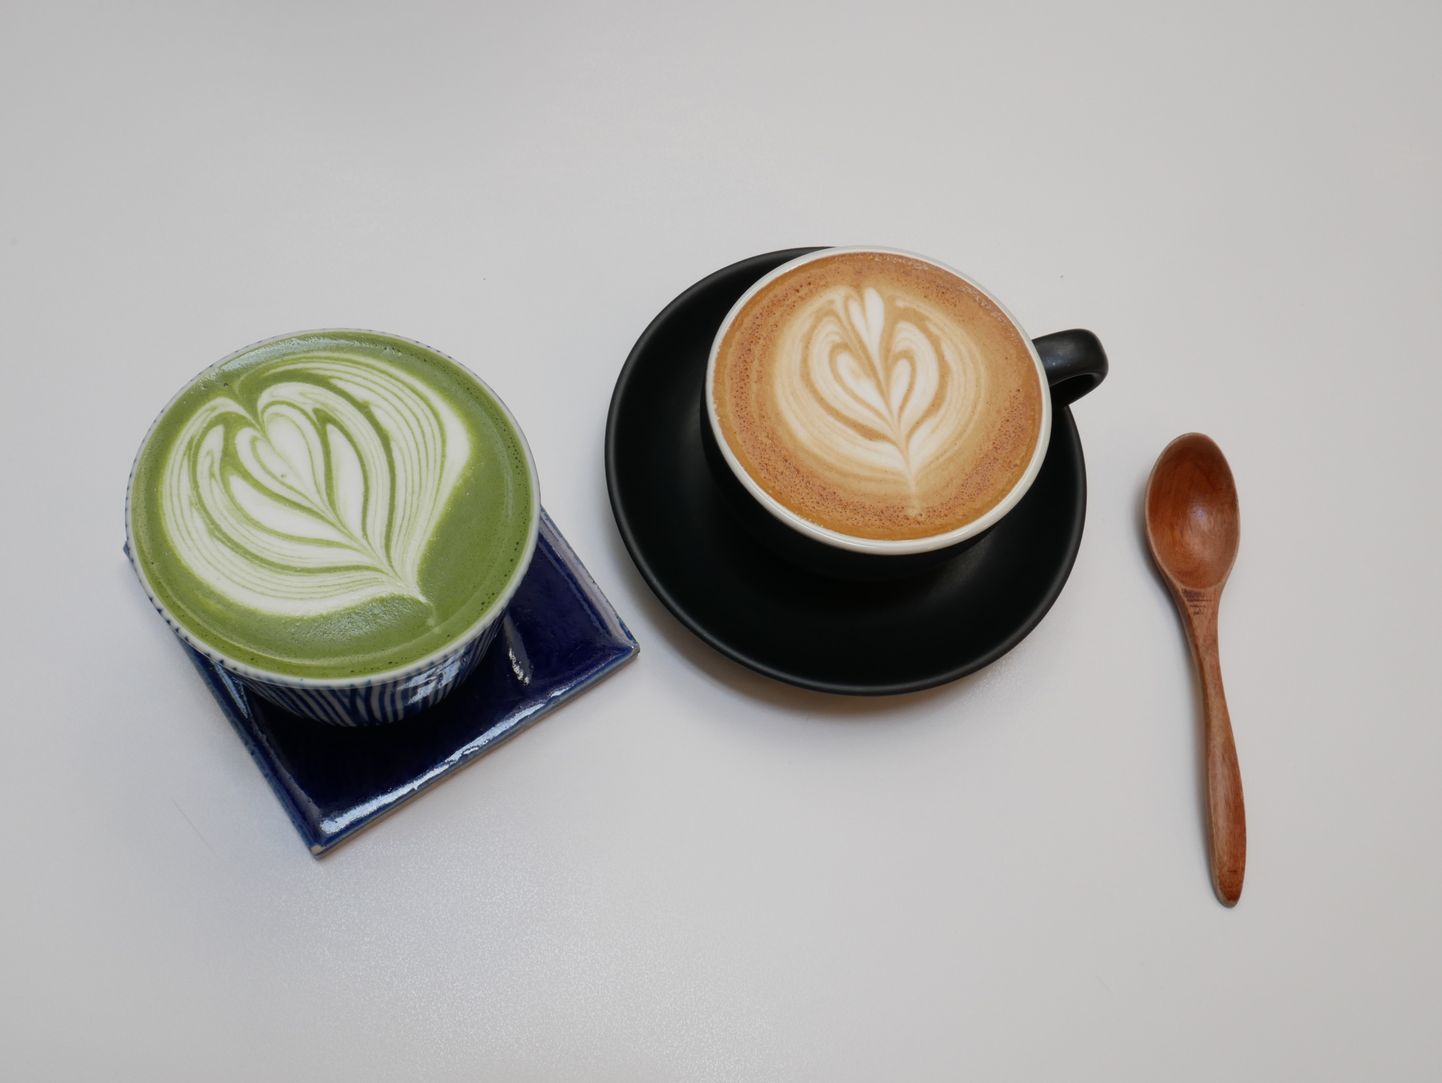 Nii roheline tee kui kohv sisaldavad mõlemad kofeiini, ent nende mõju kehale on veidi erinev.